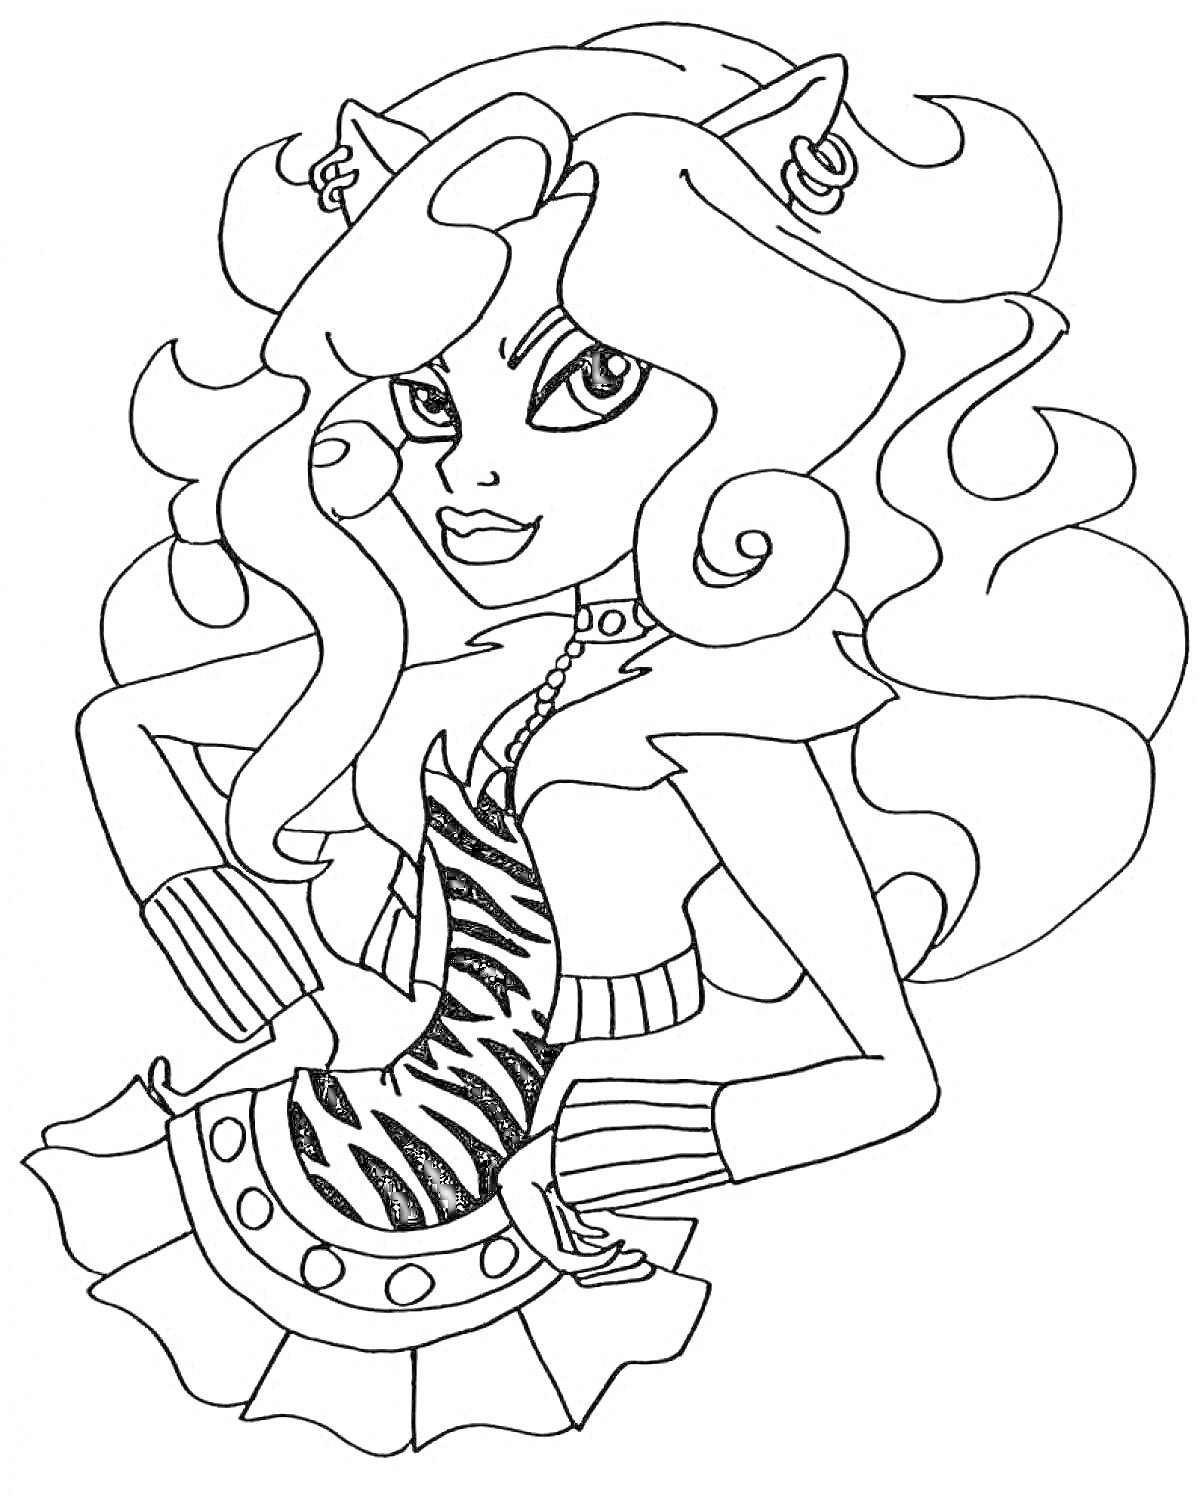 Девушка-монстр с длинными волнистыми волосами, кошачьими ушами и полосатым топом